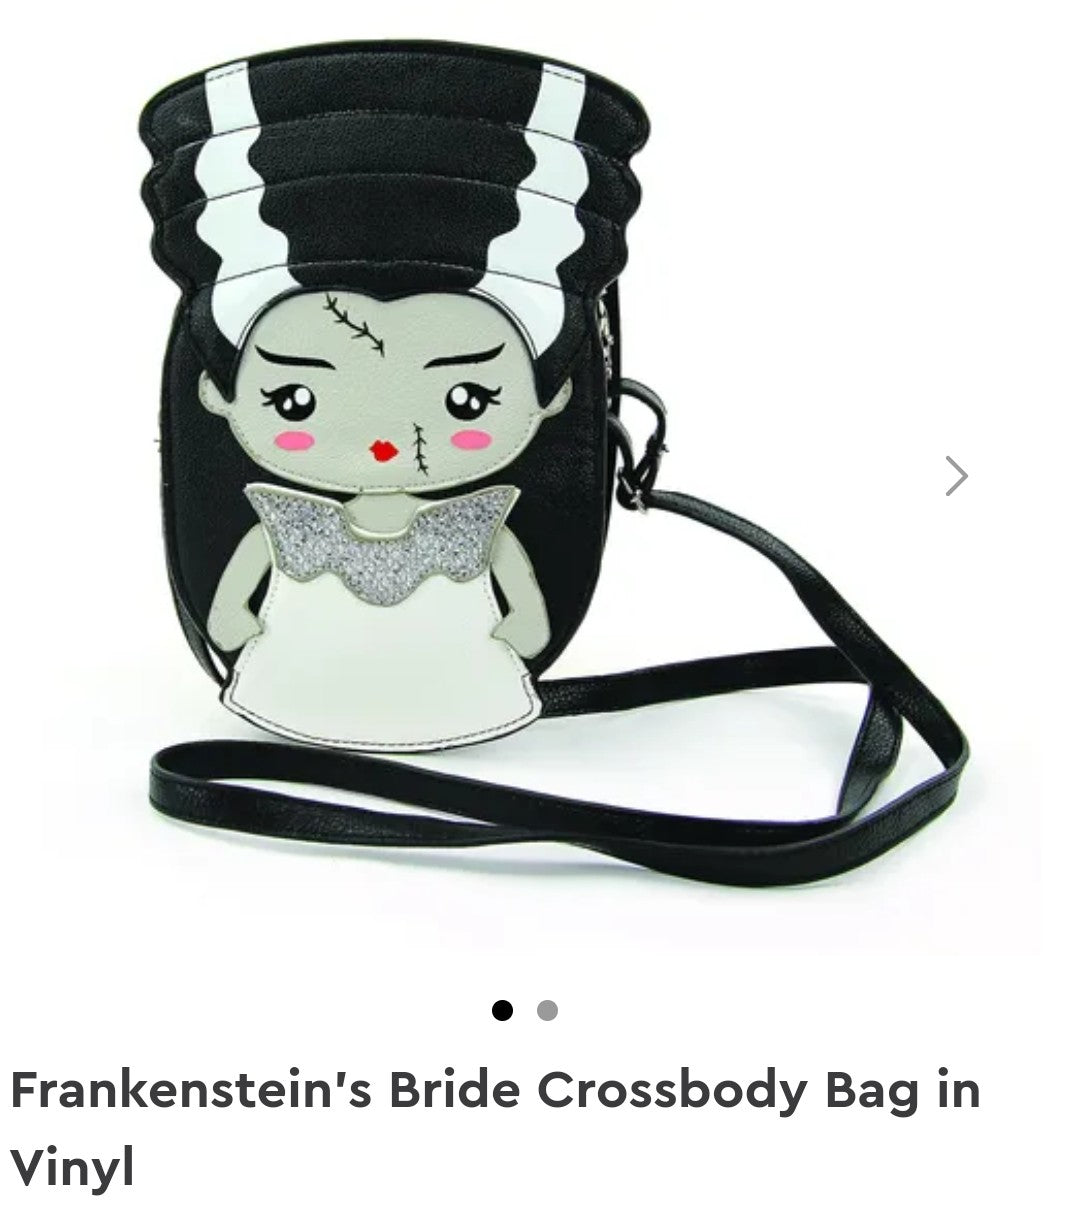 Bride of Frankenstein Crossbody Bag in Vinyl